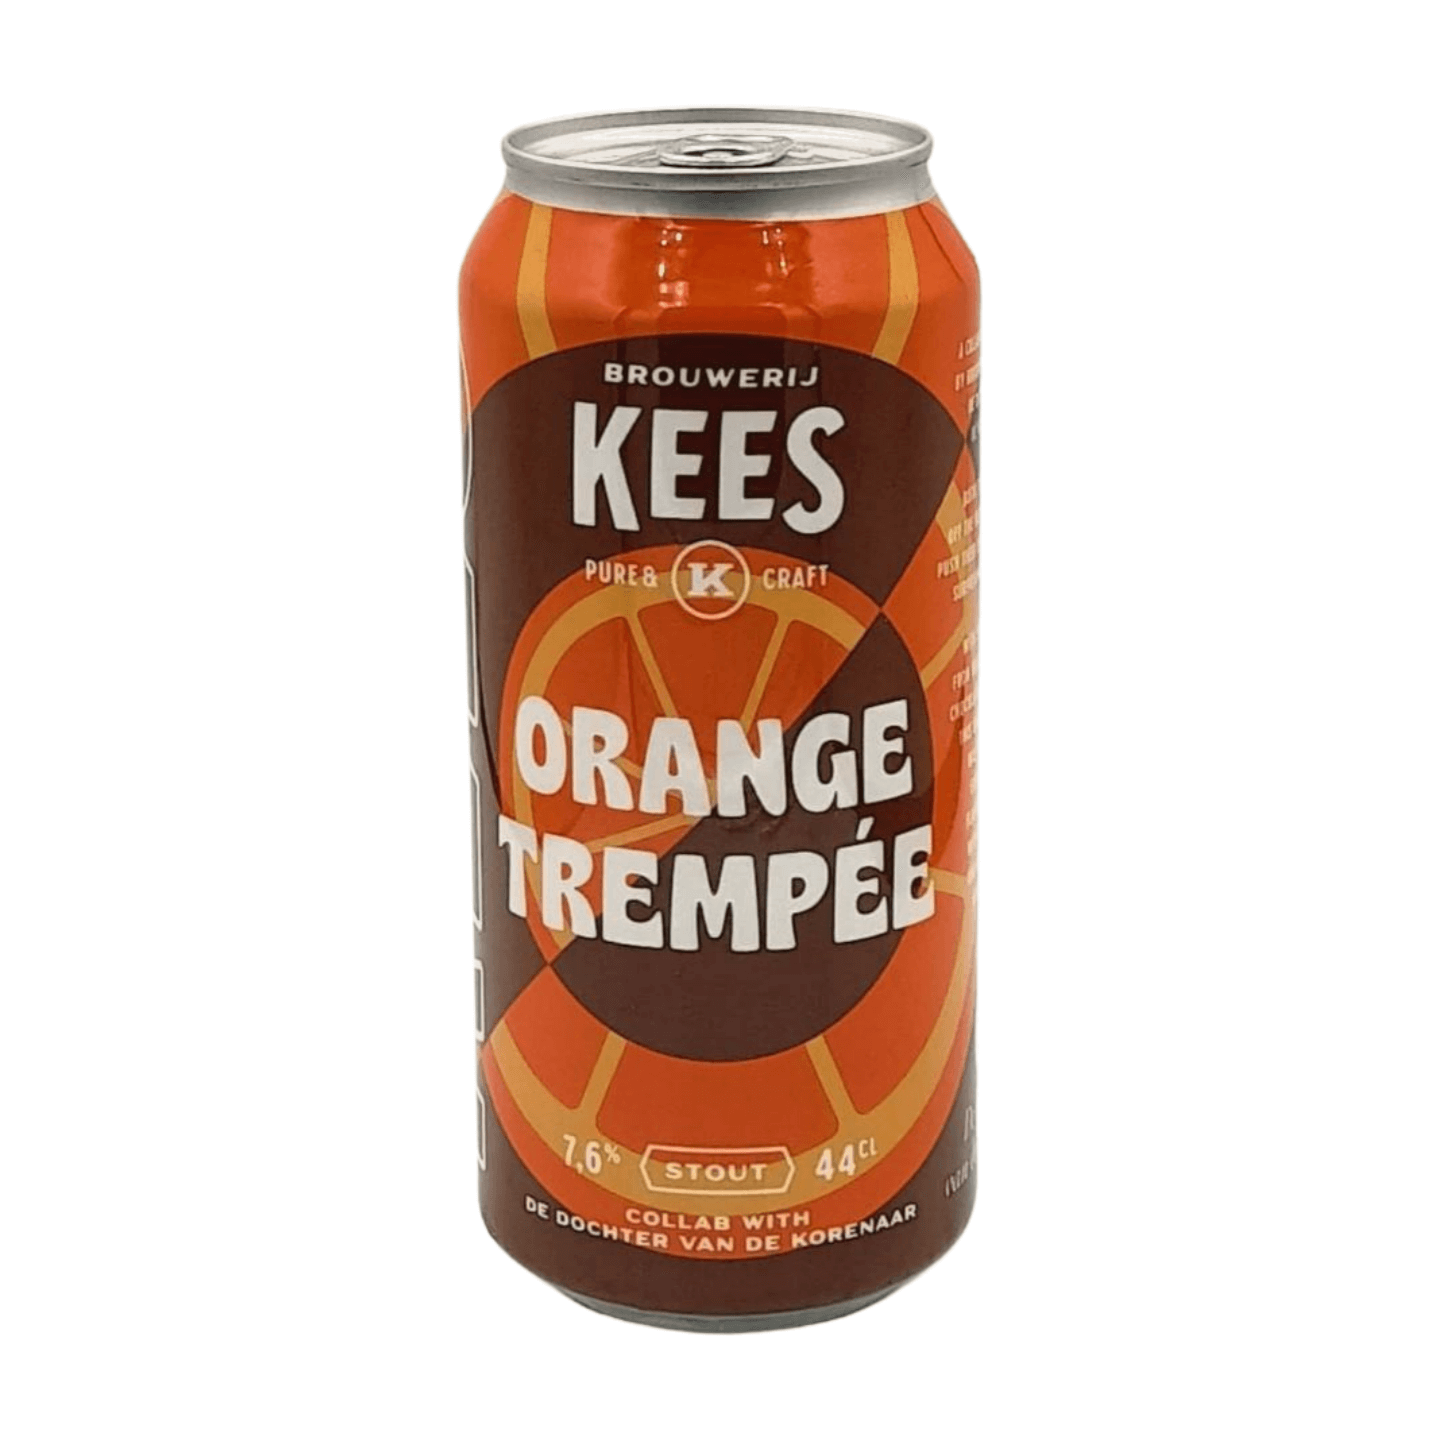 Kees x De Dochter van de Korenaar Orange Trempée | Stout Webshop Online Verdins Bierwinkel Rotterdam